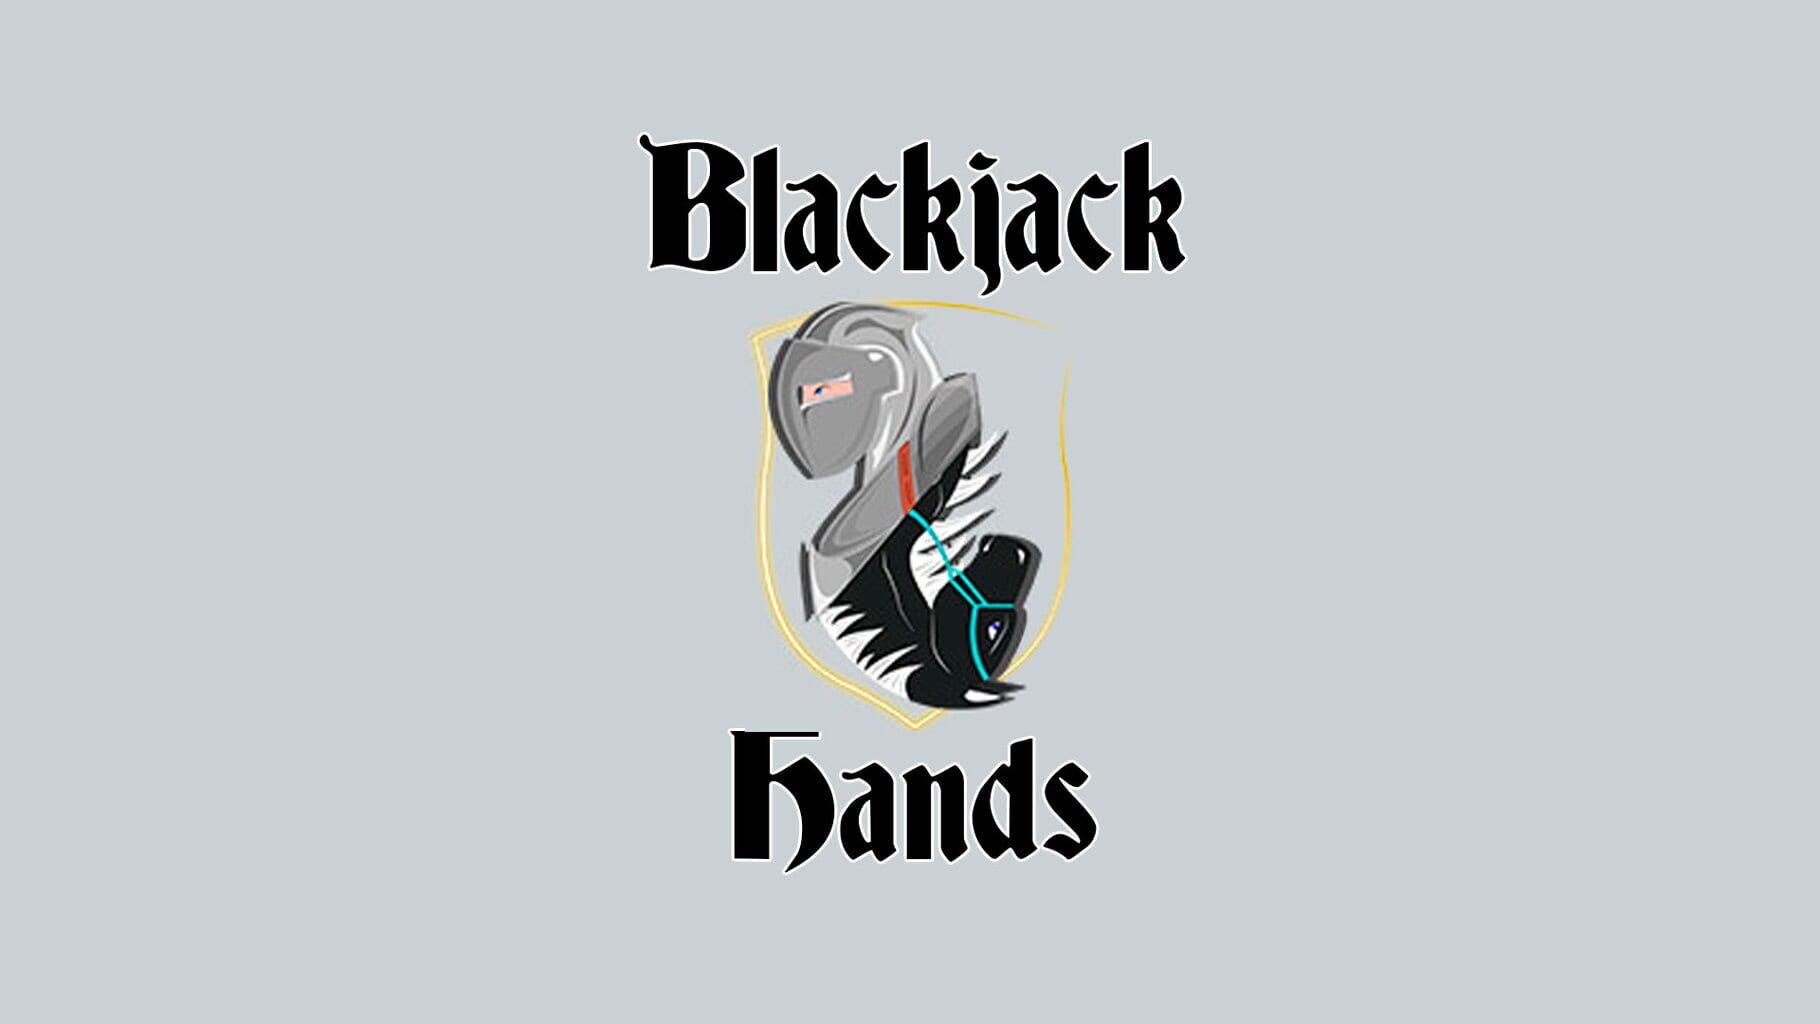 Blackjack Hands artwork